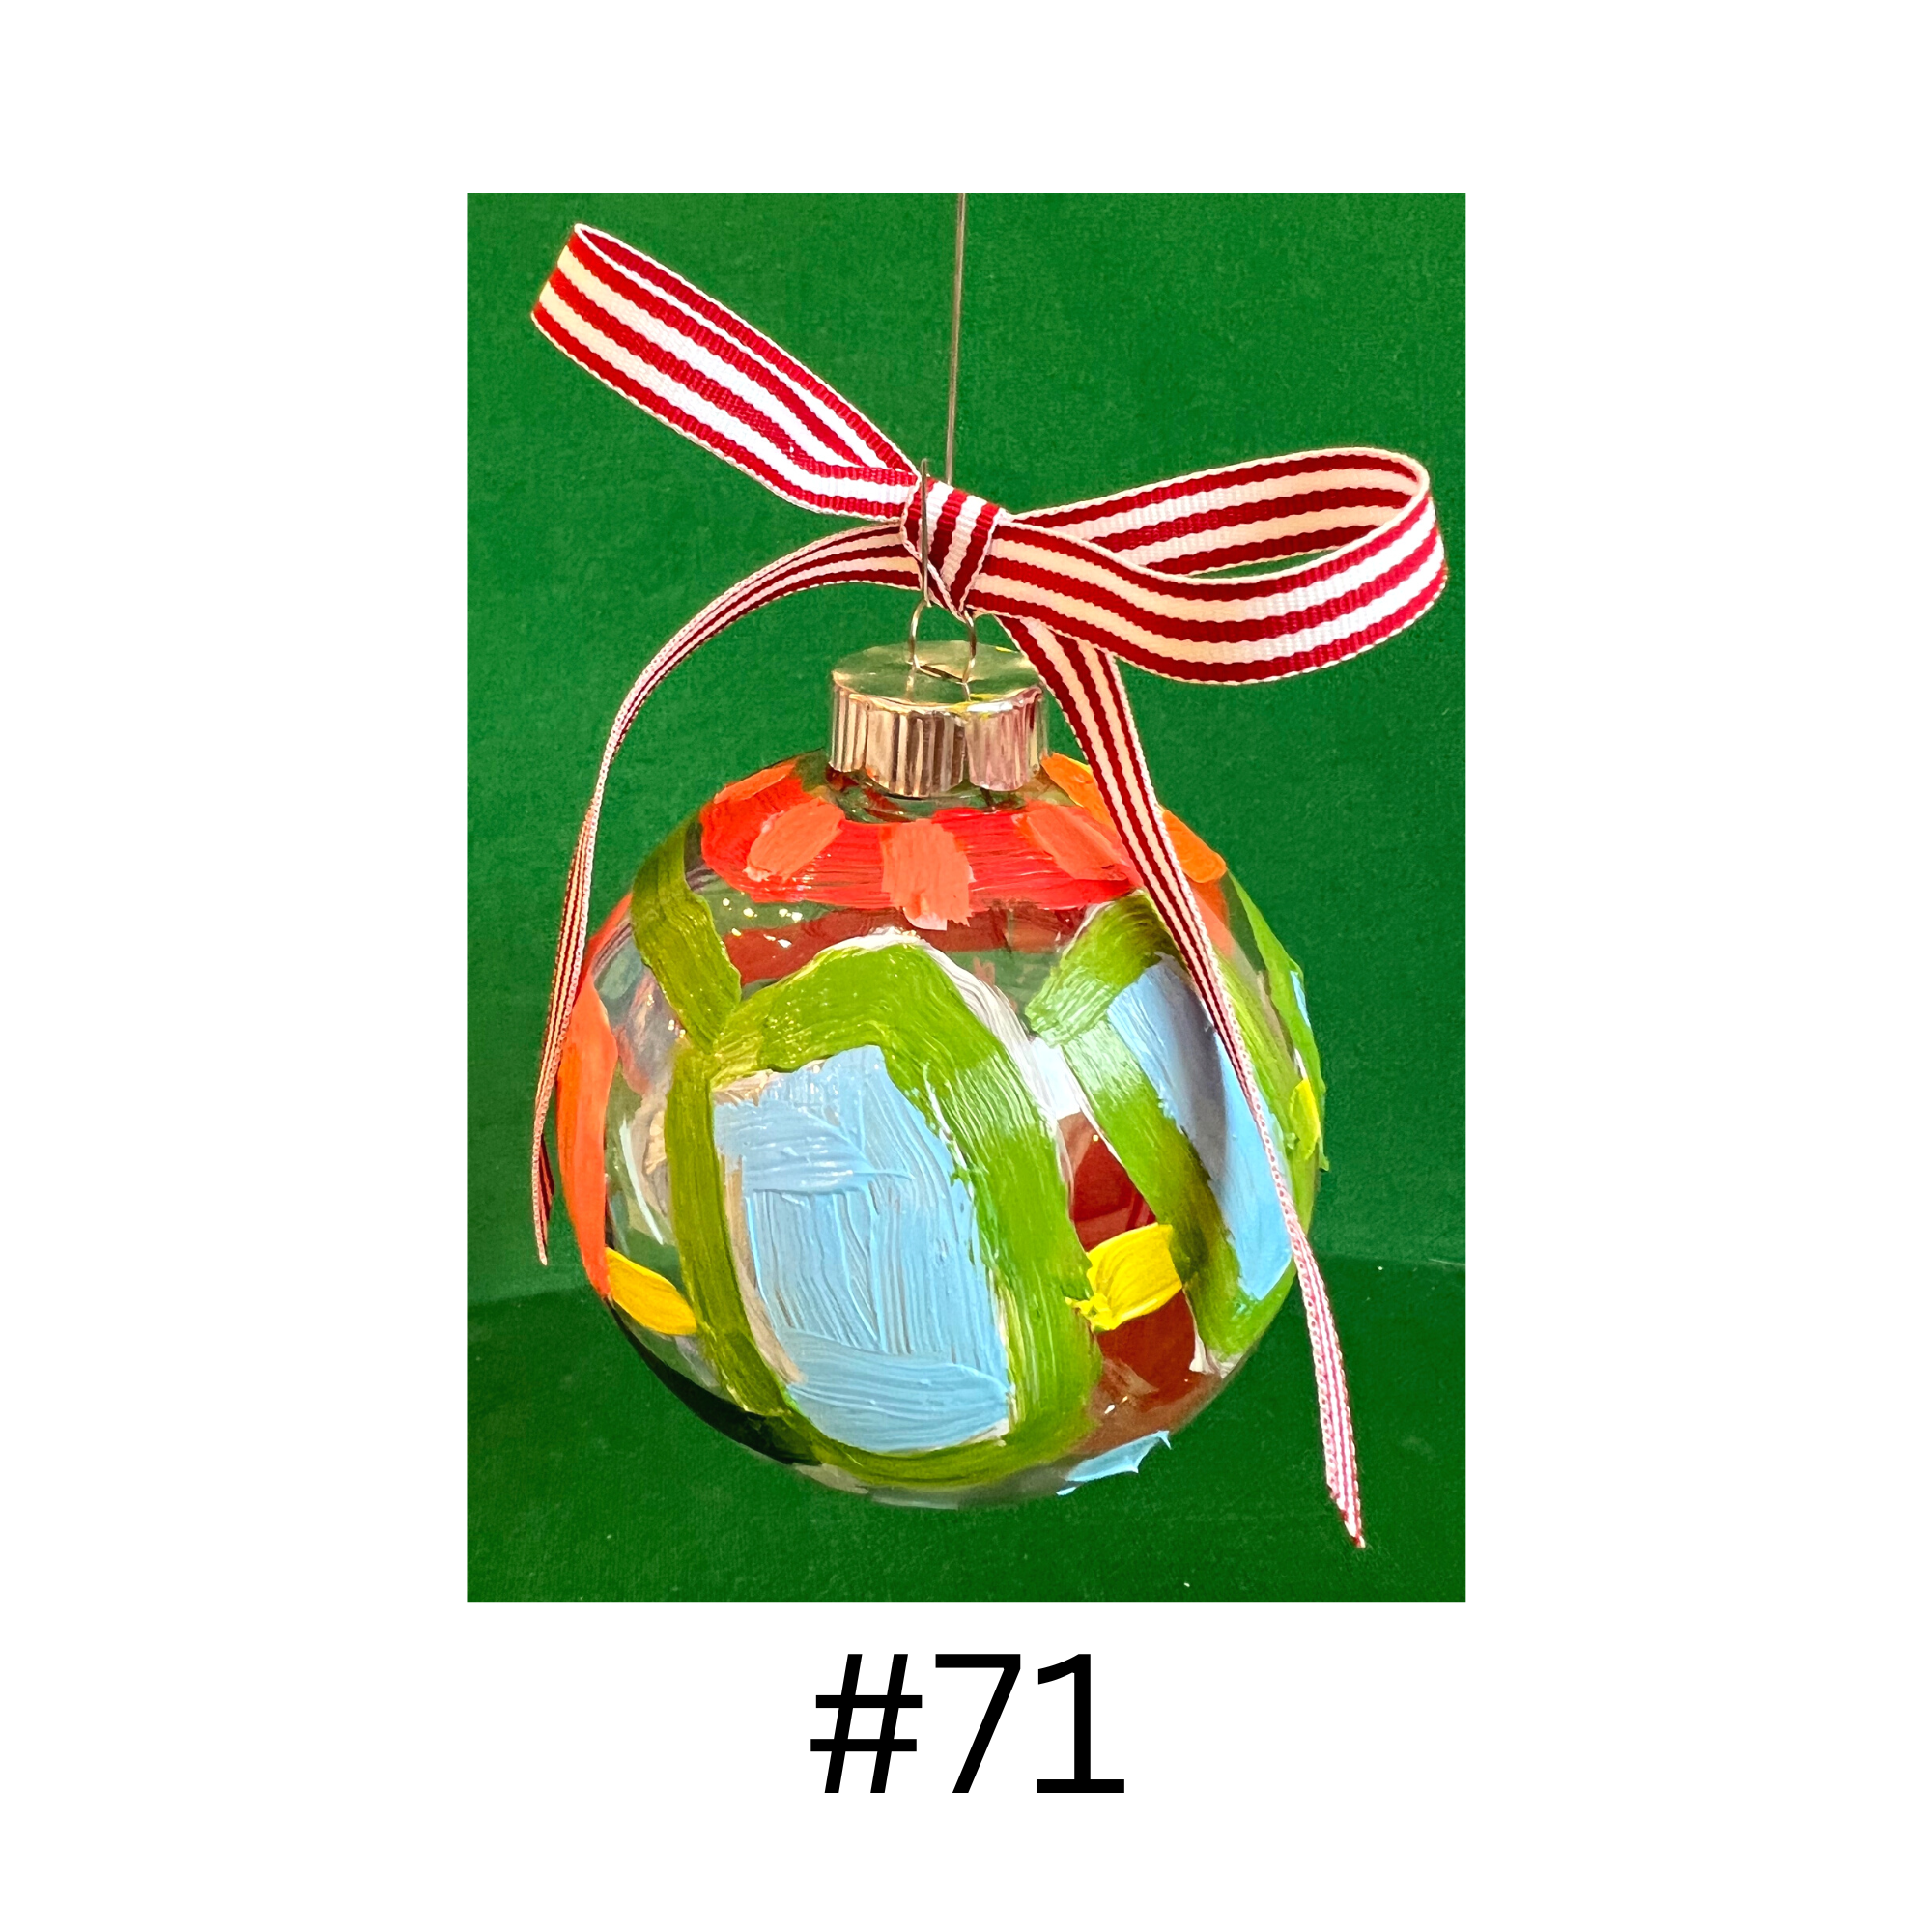 Whoville Ornament #71